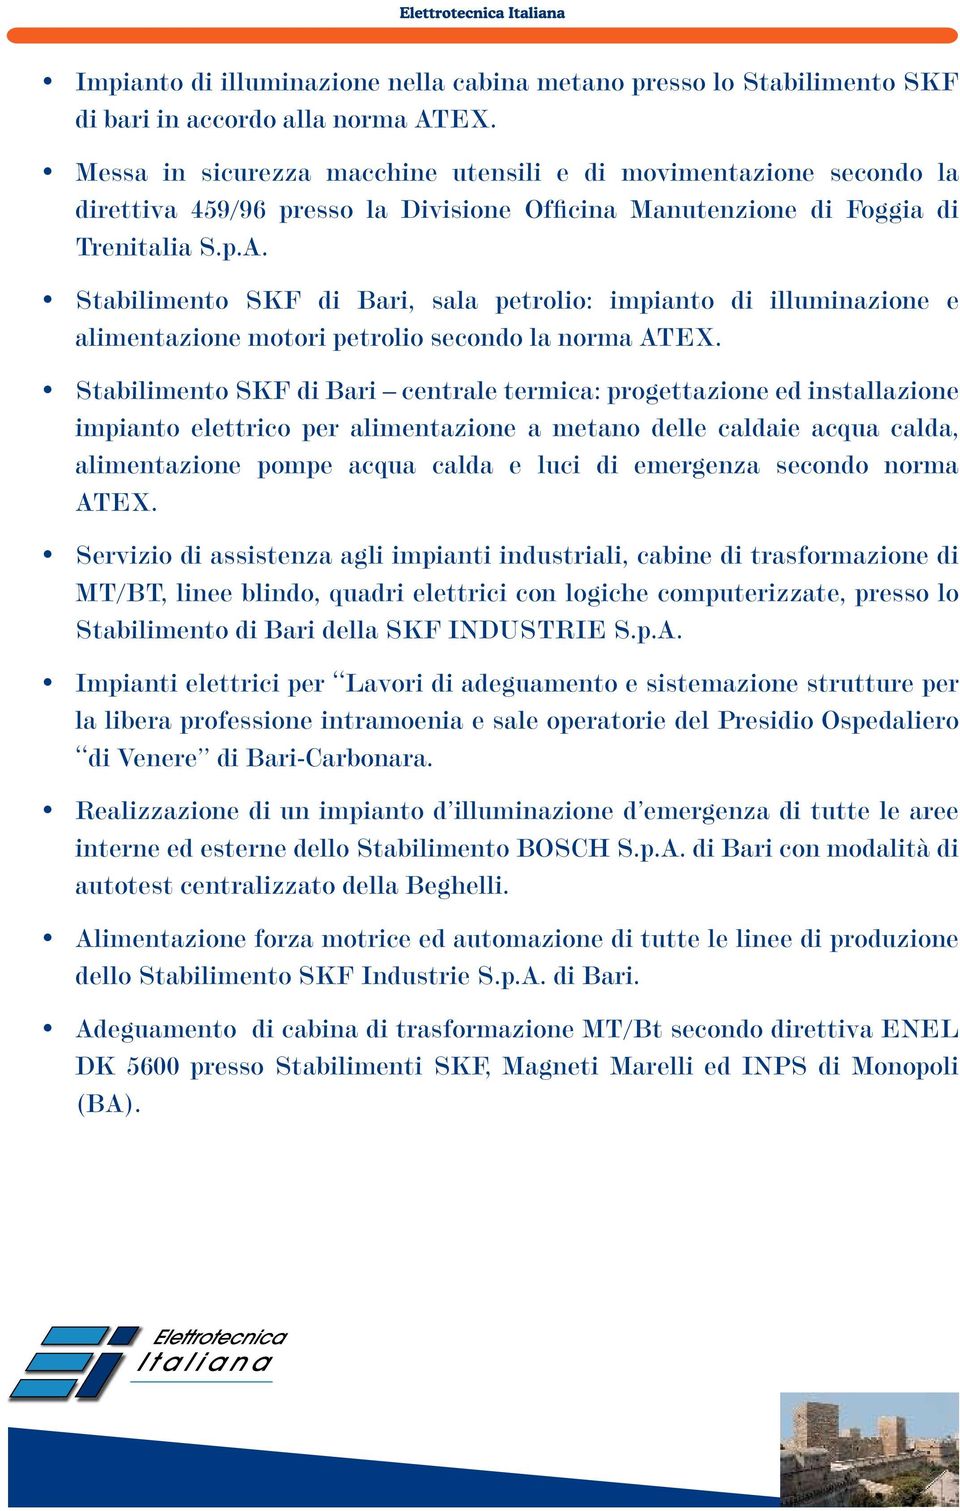 Stabilimento SKF di Bari, sala petrolio: impianto di illuminazione e alimentazione motori petrolio secondo la norma ATEX.